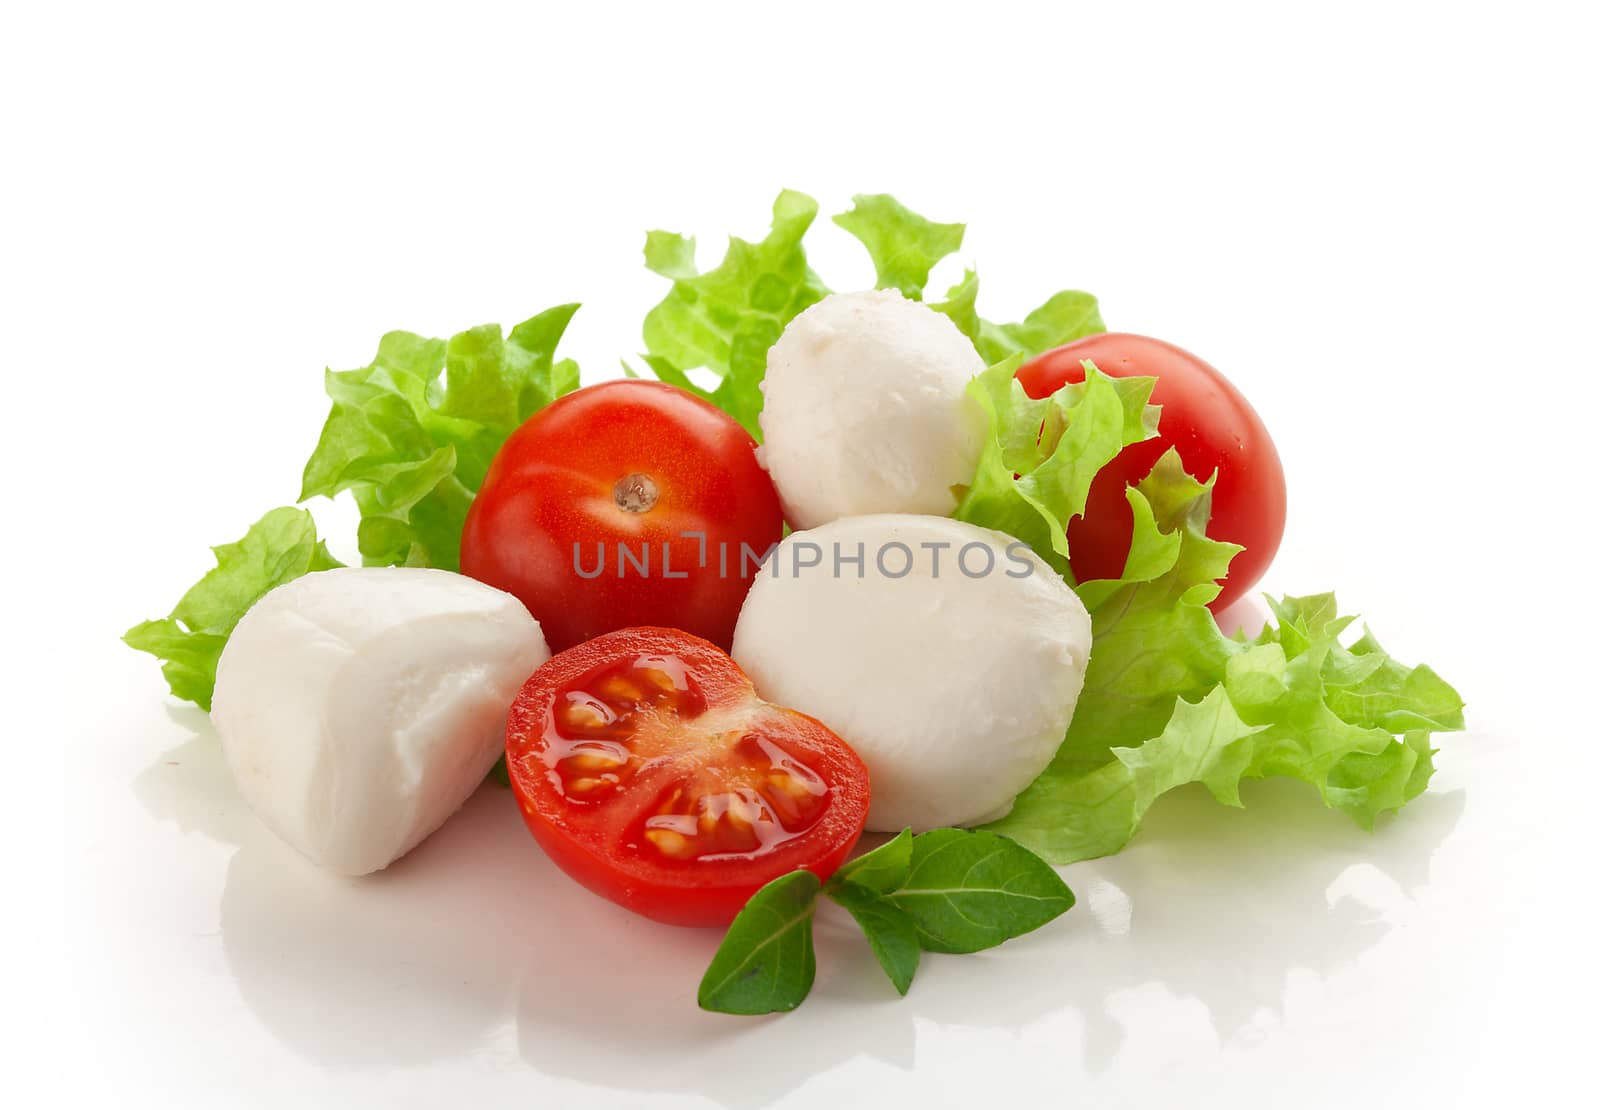 Mozzarella with tomato and lettuce by Angorius